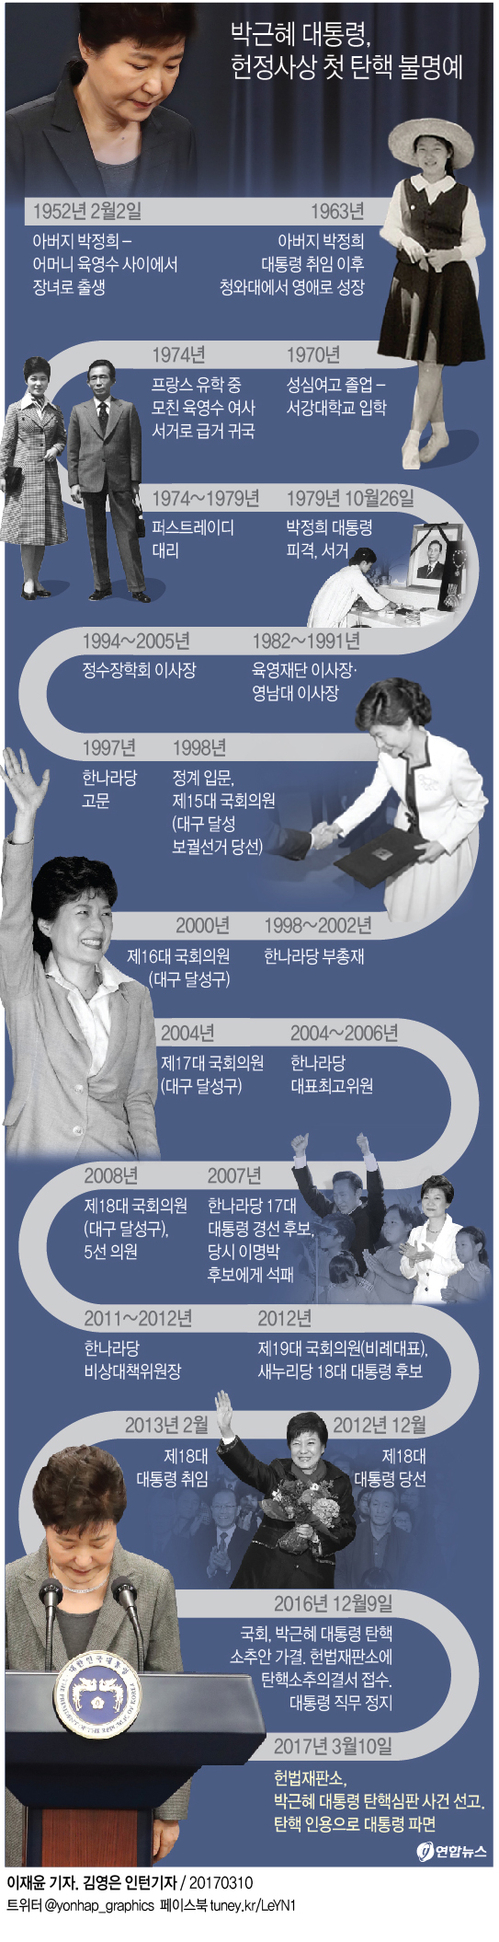 [그래픽] 박근혜 전 대통령이 걸어온 길